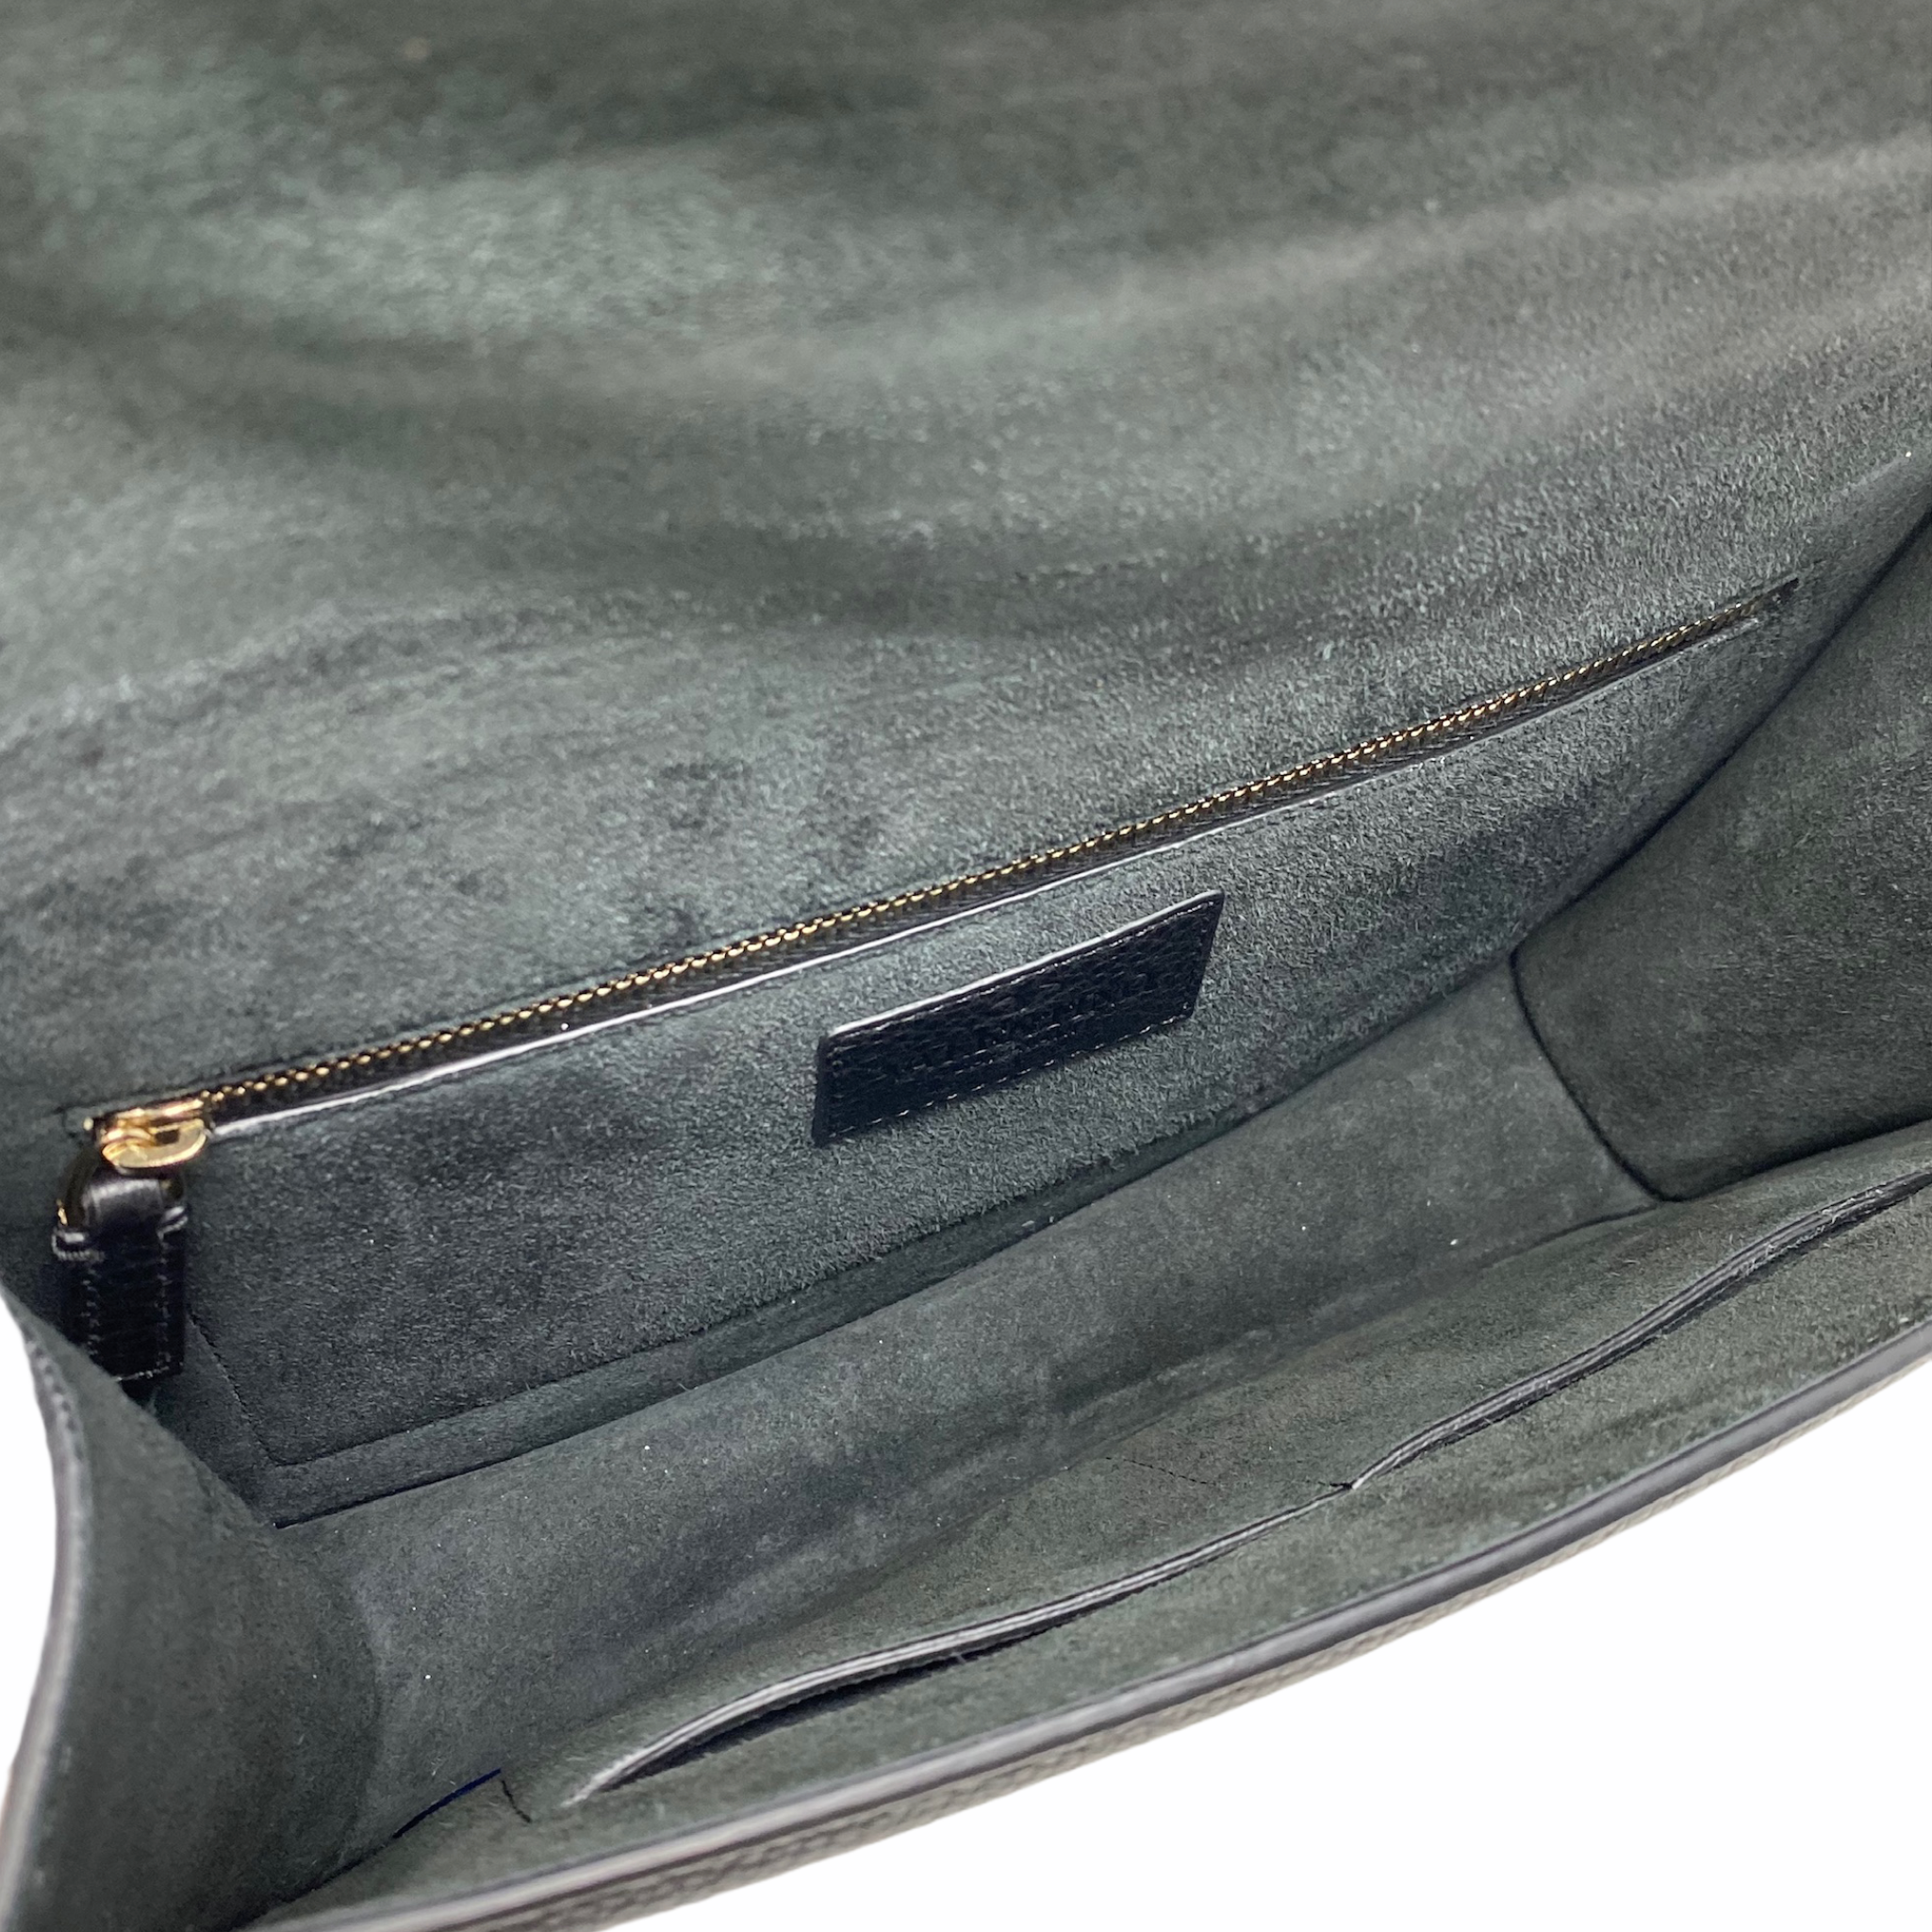 Valentino Black Rockstud Medium Glam Lock Bag